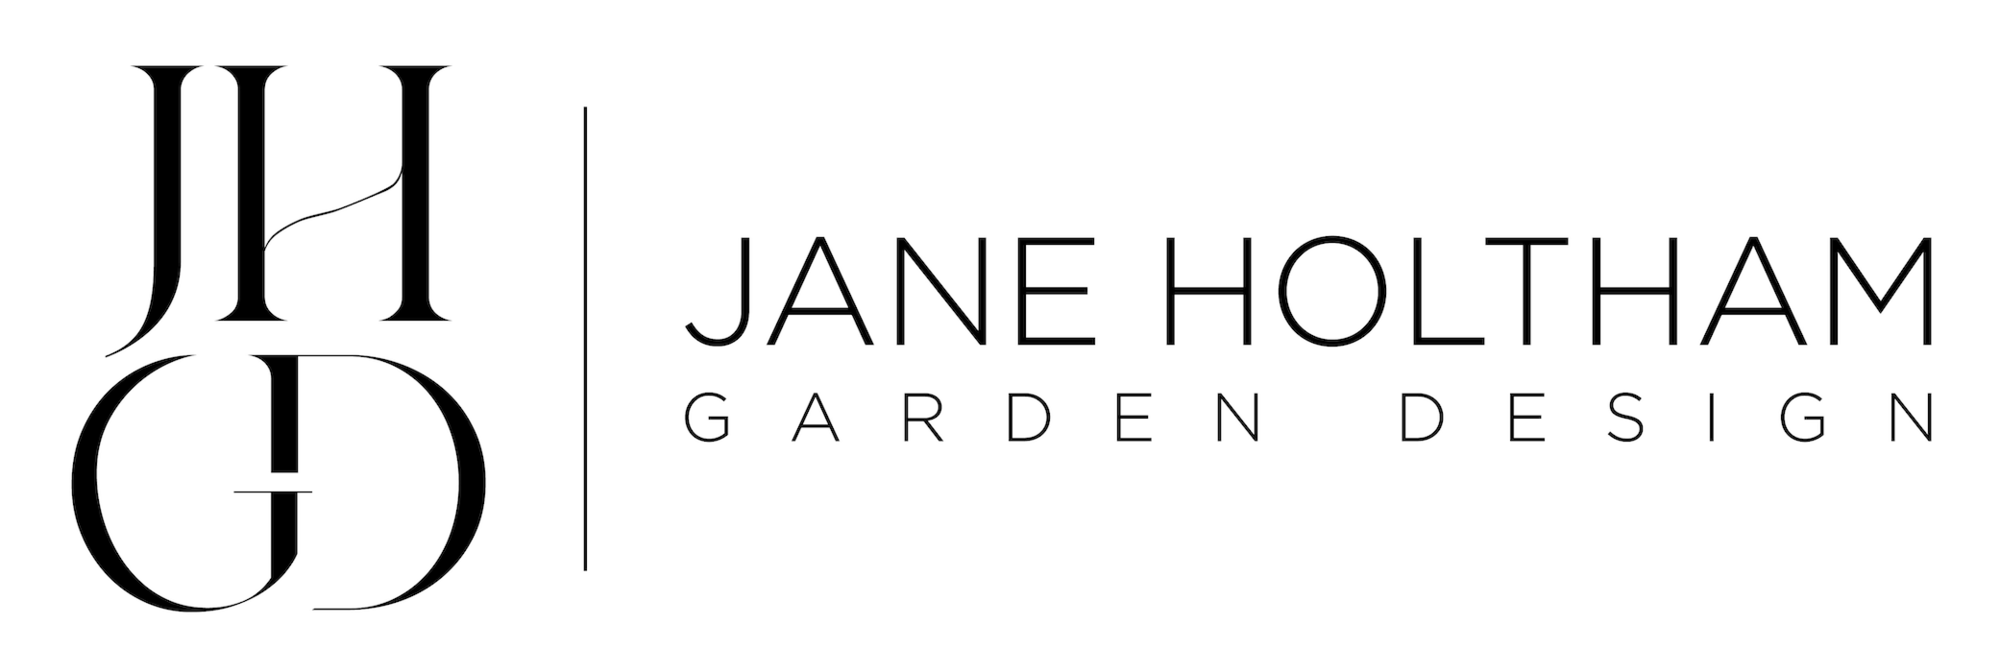 Jane Holtham Garden Design